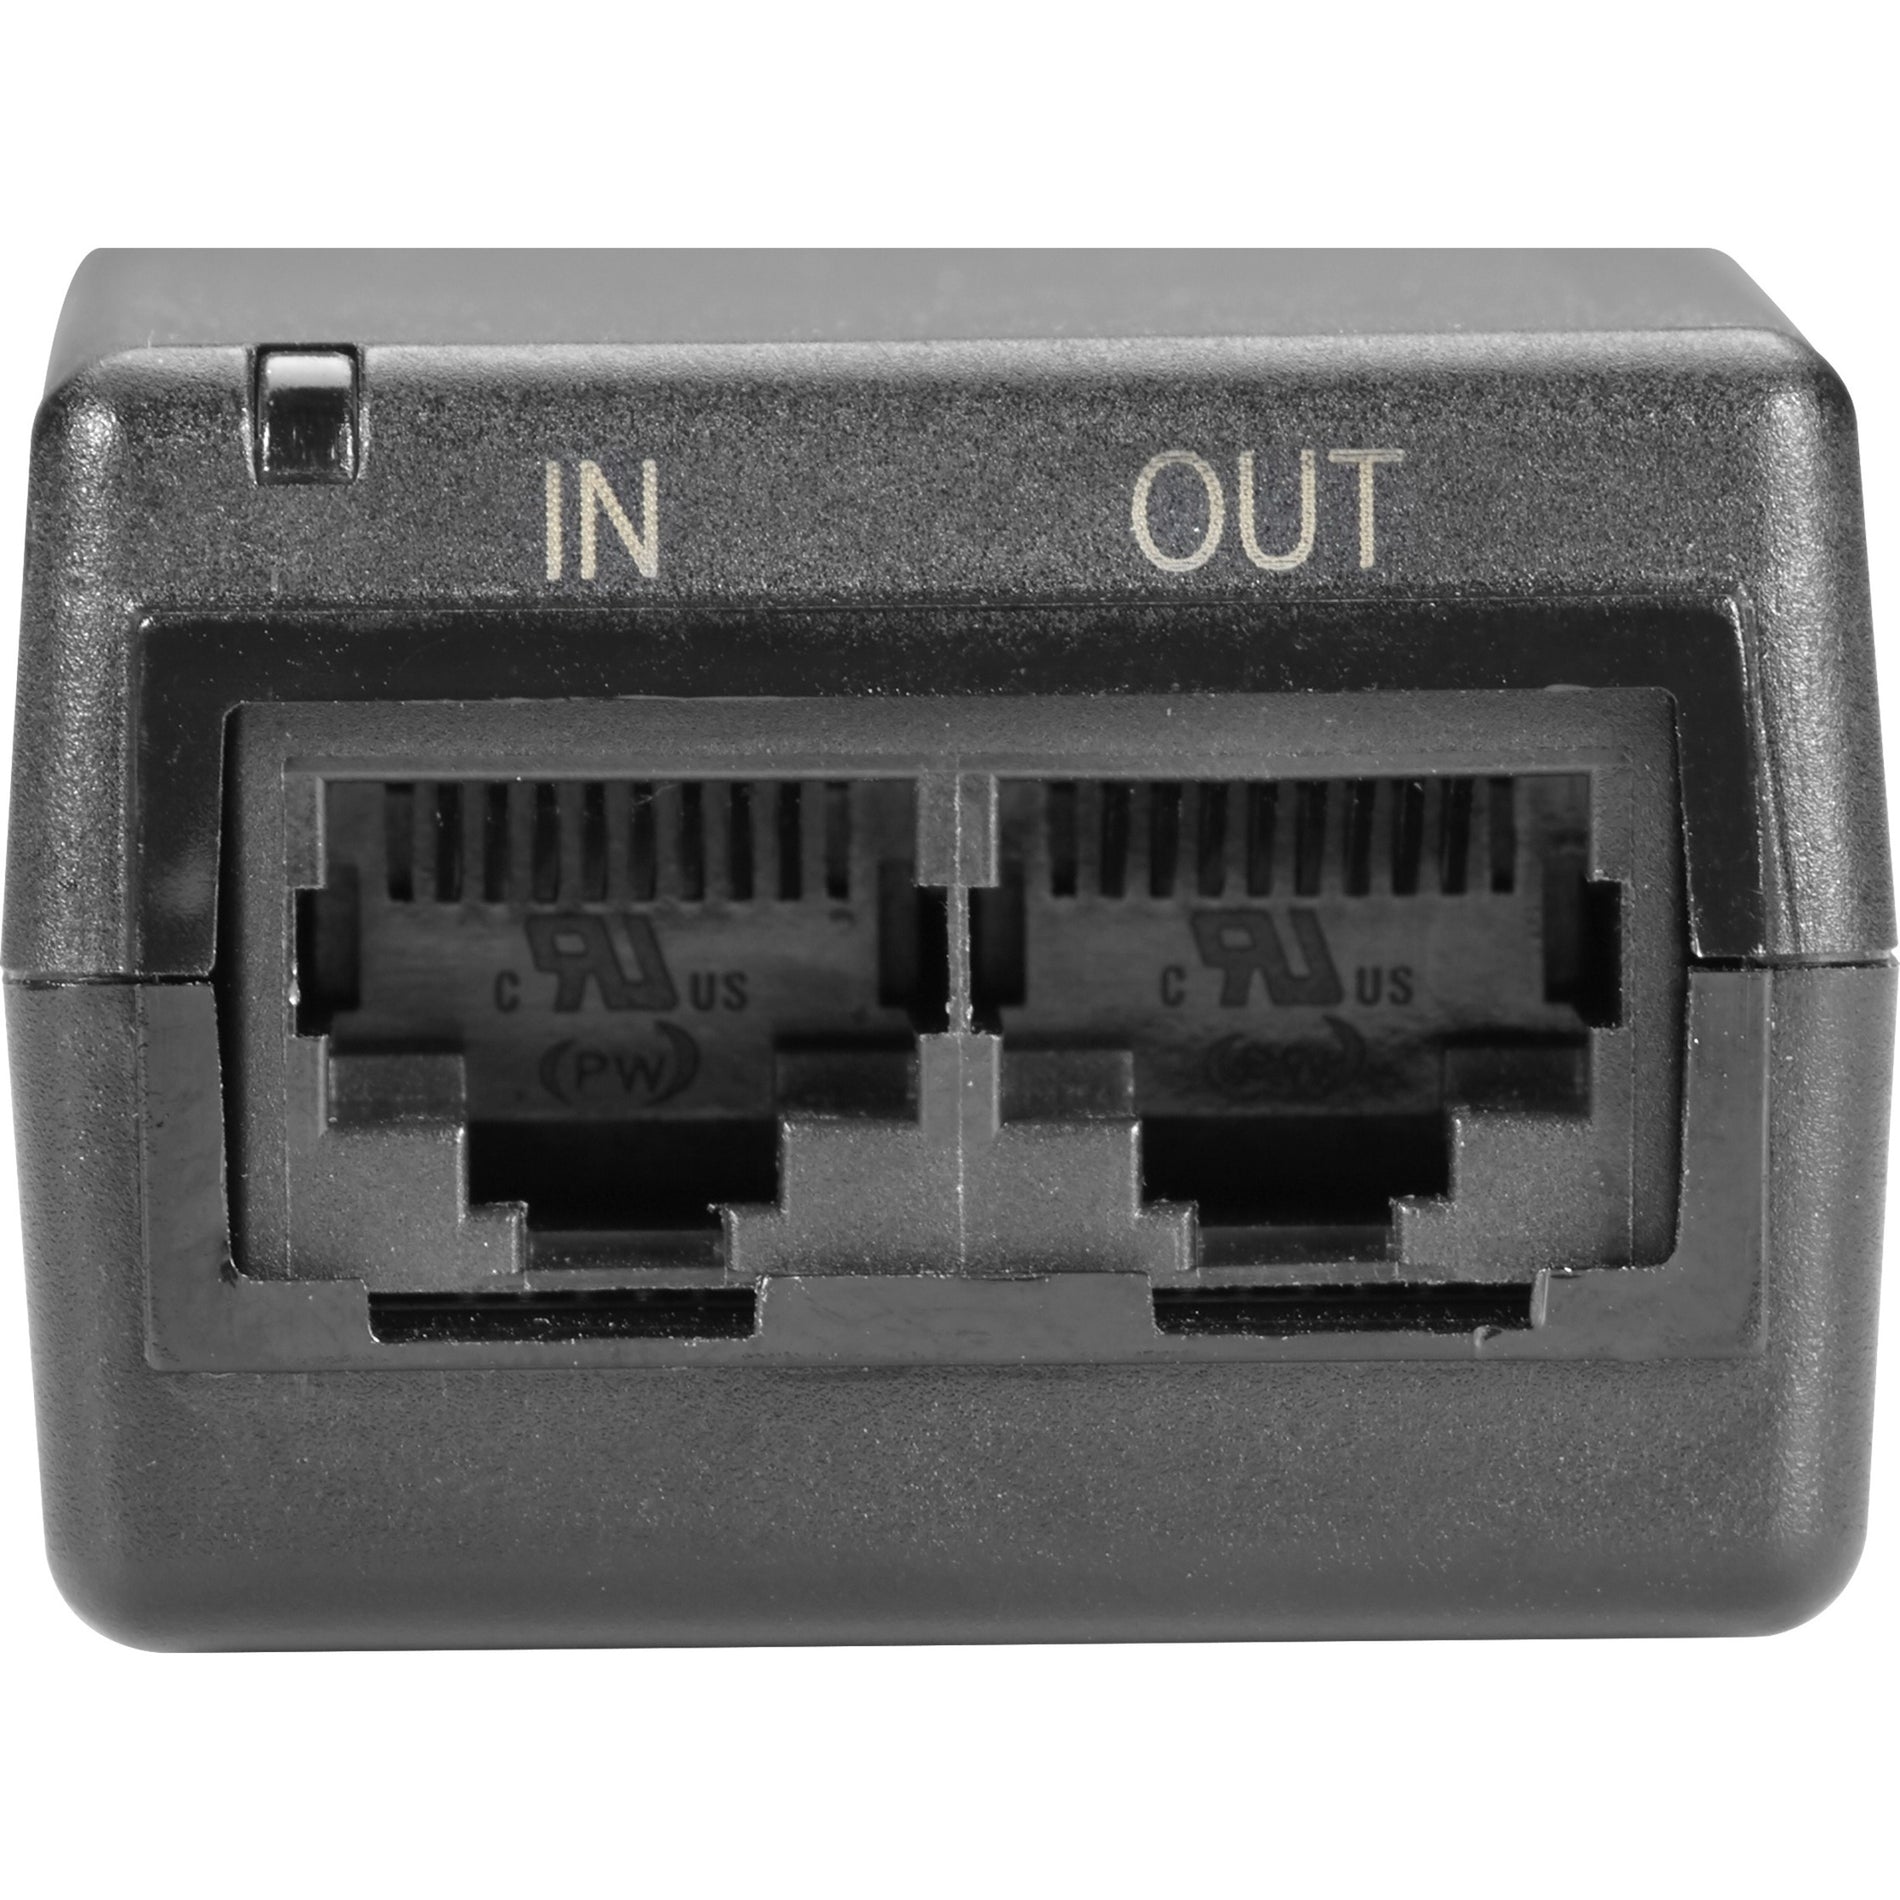 Black Box LPJ000A-F-R3 PoE Gigabit Ethernet Injector - 802.3af, 1 Year Warranty, Environmentally Friendly, 15W Output Power